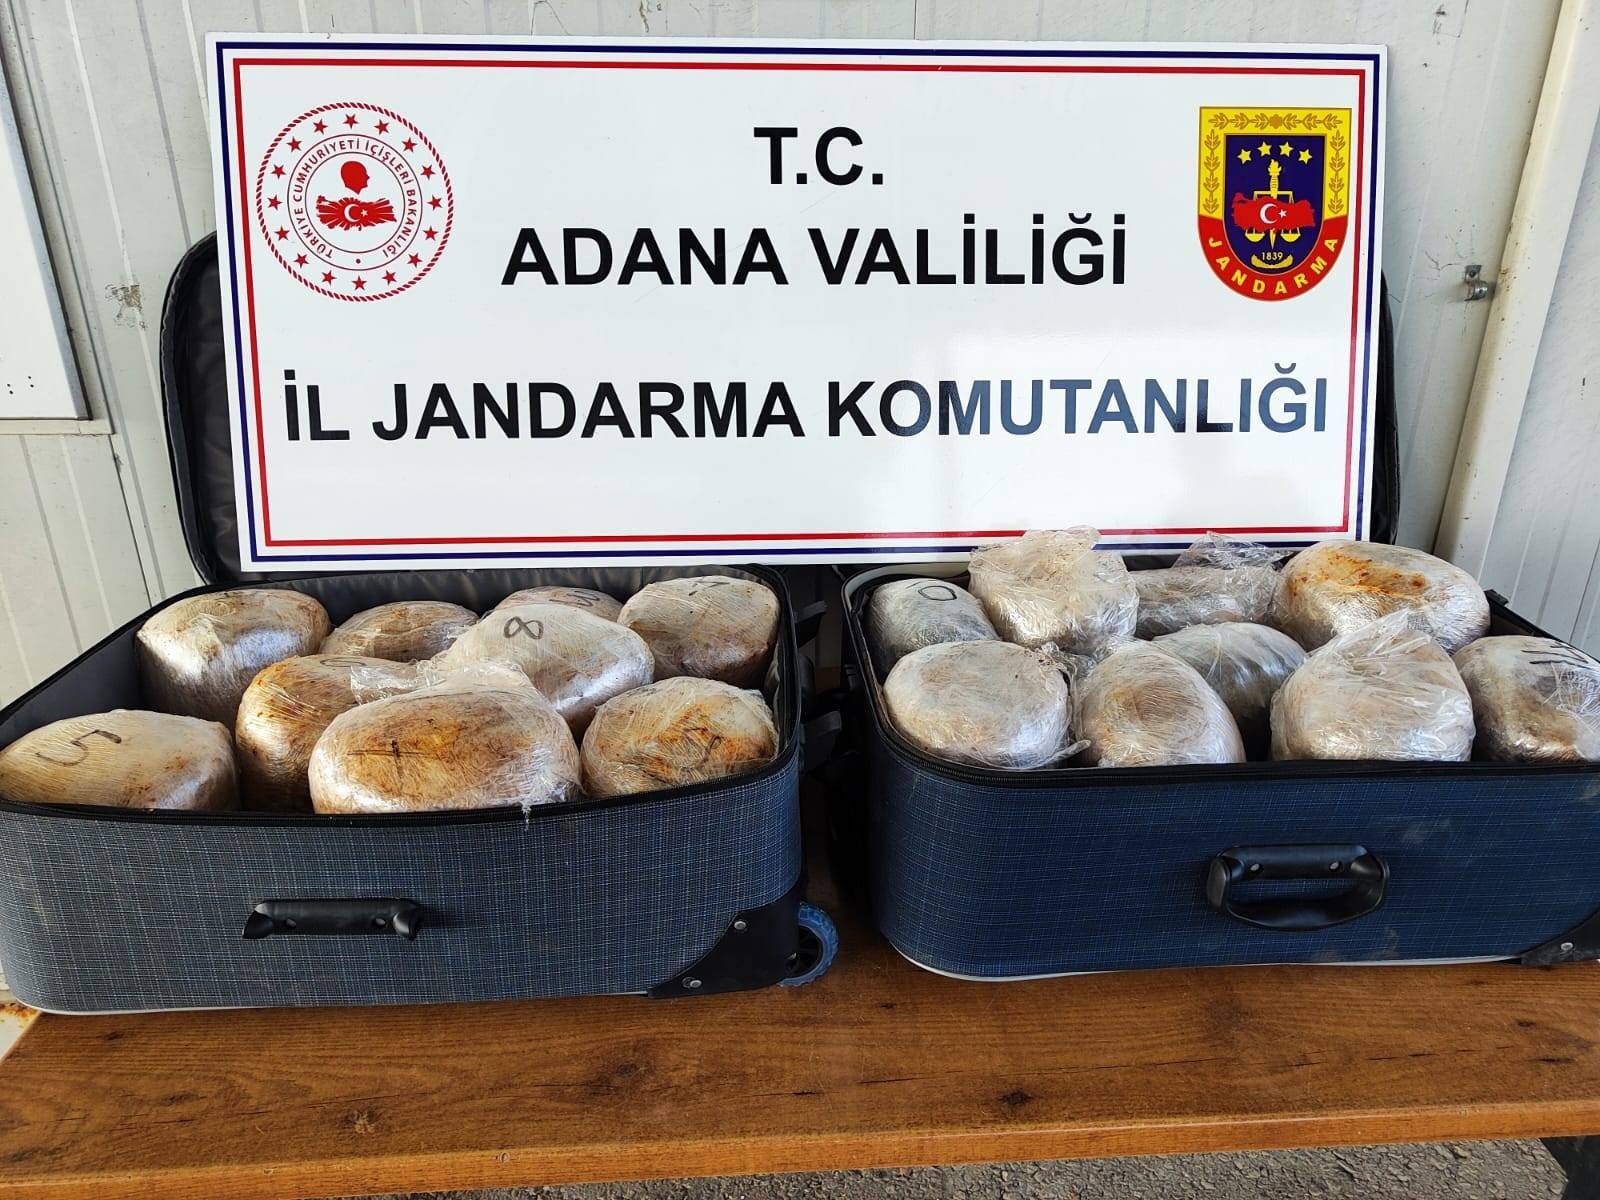 Adana'da jandarma ekipleri çok miktarda uyuşturucu ele geçirdi